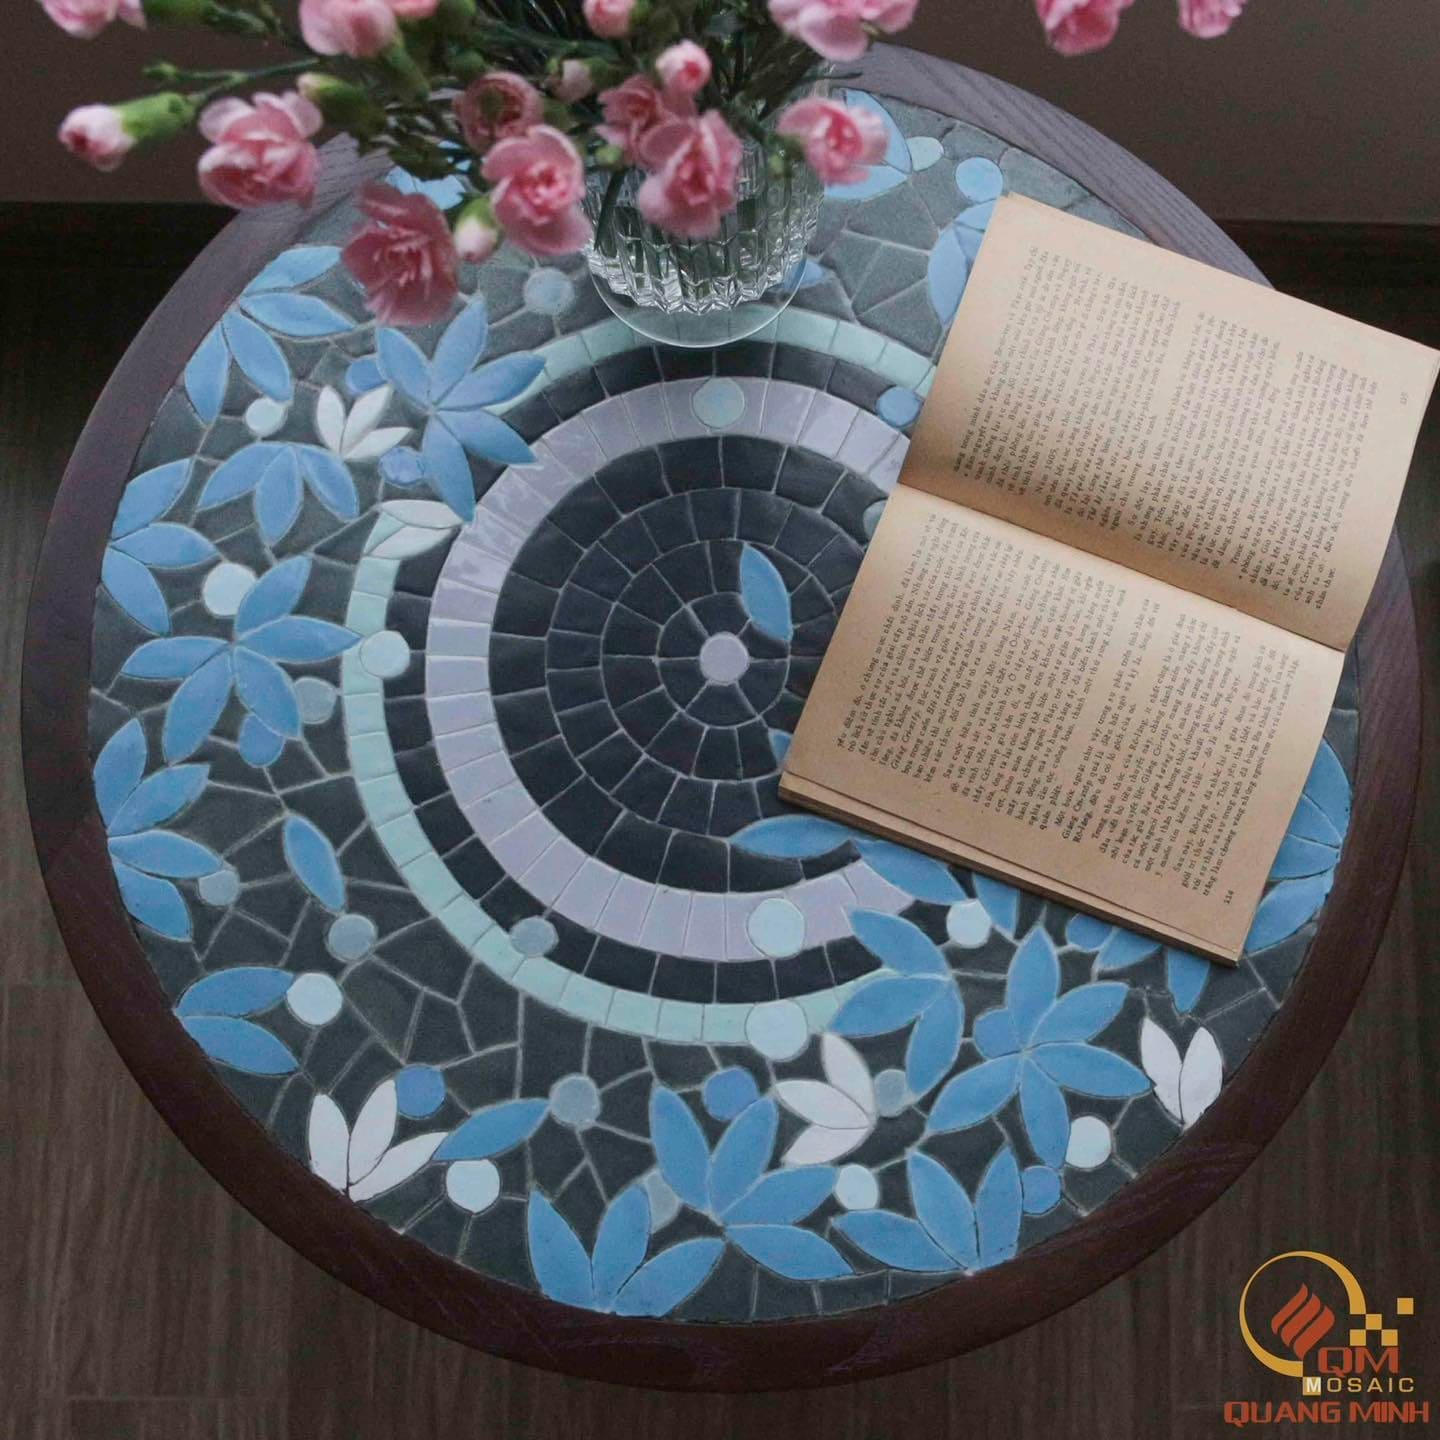 Bàn tròn khung gỗ mosaic gốm Yên Lam QM-BT21